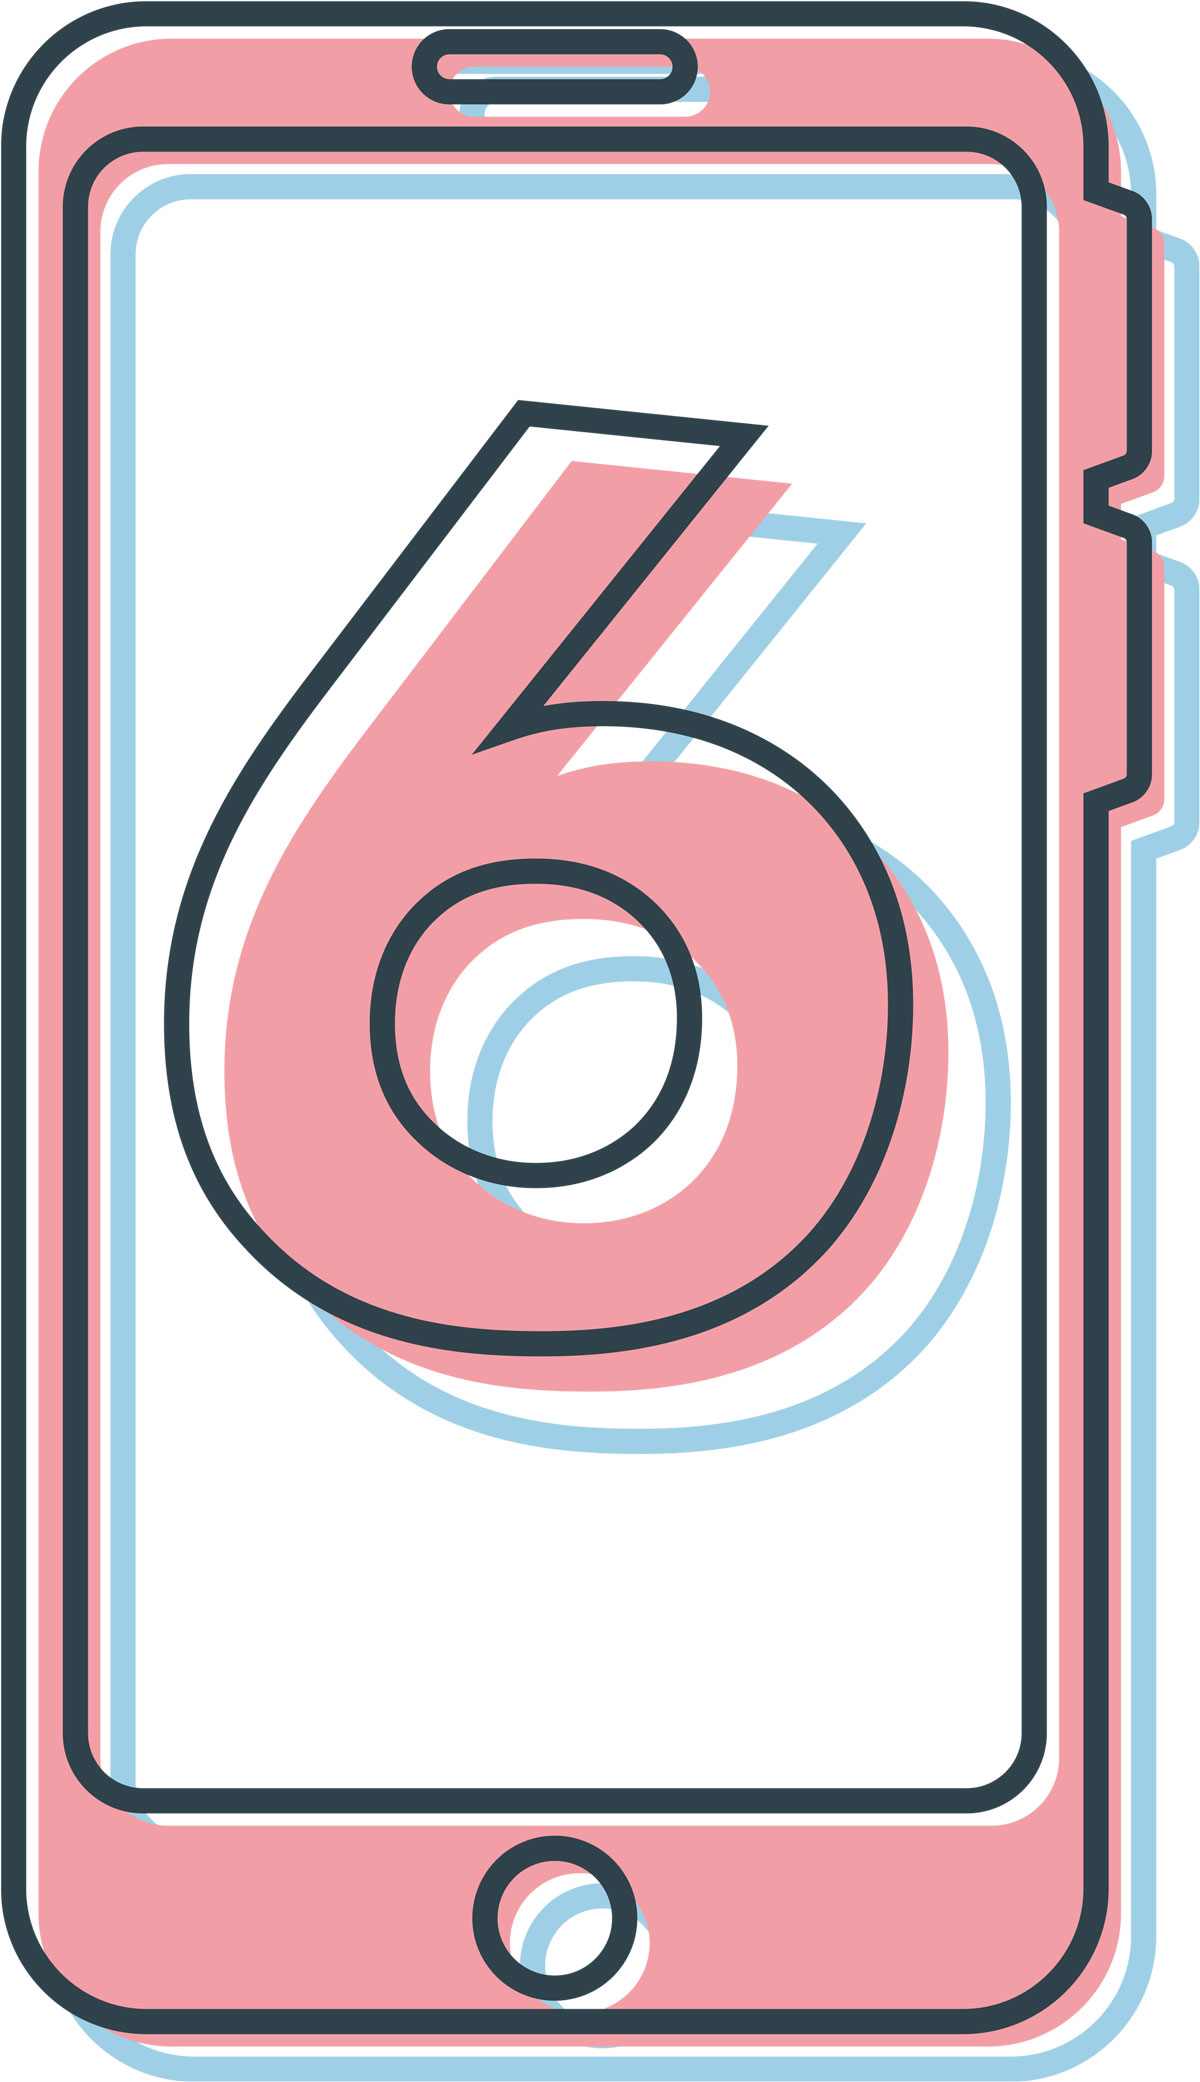 No. 6 inside a smartphone graphic